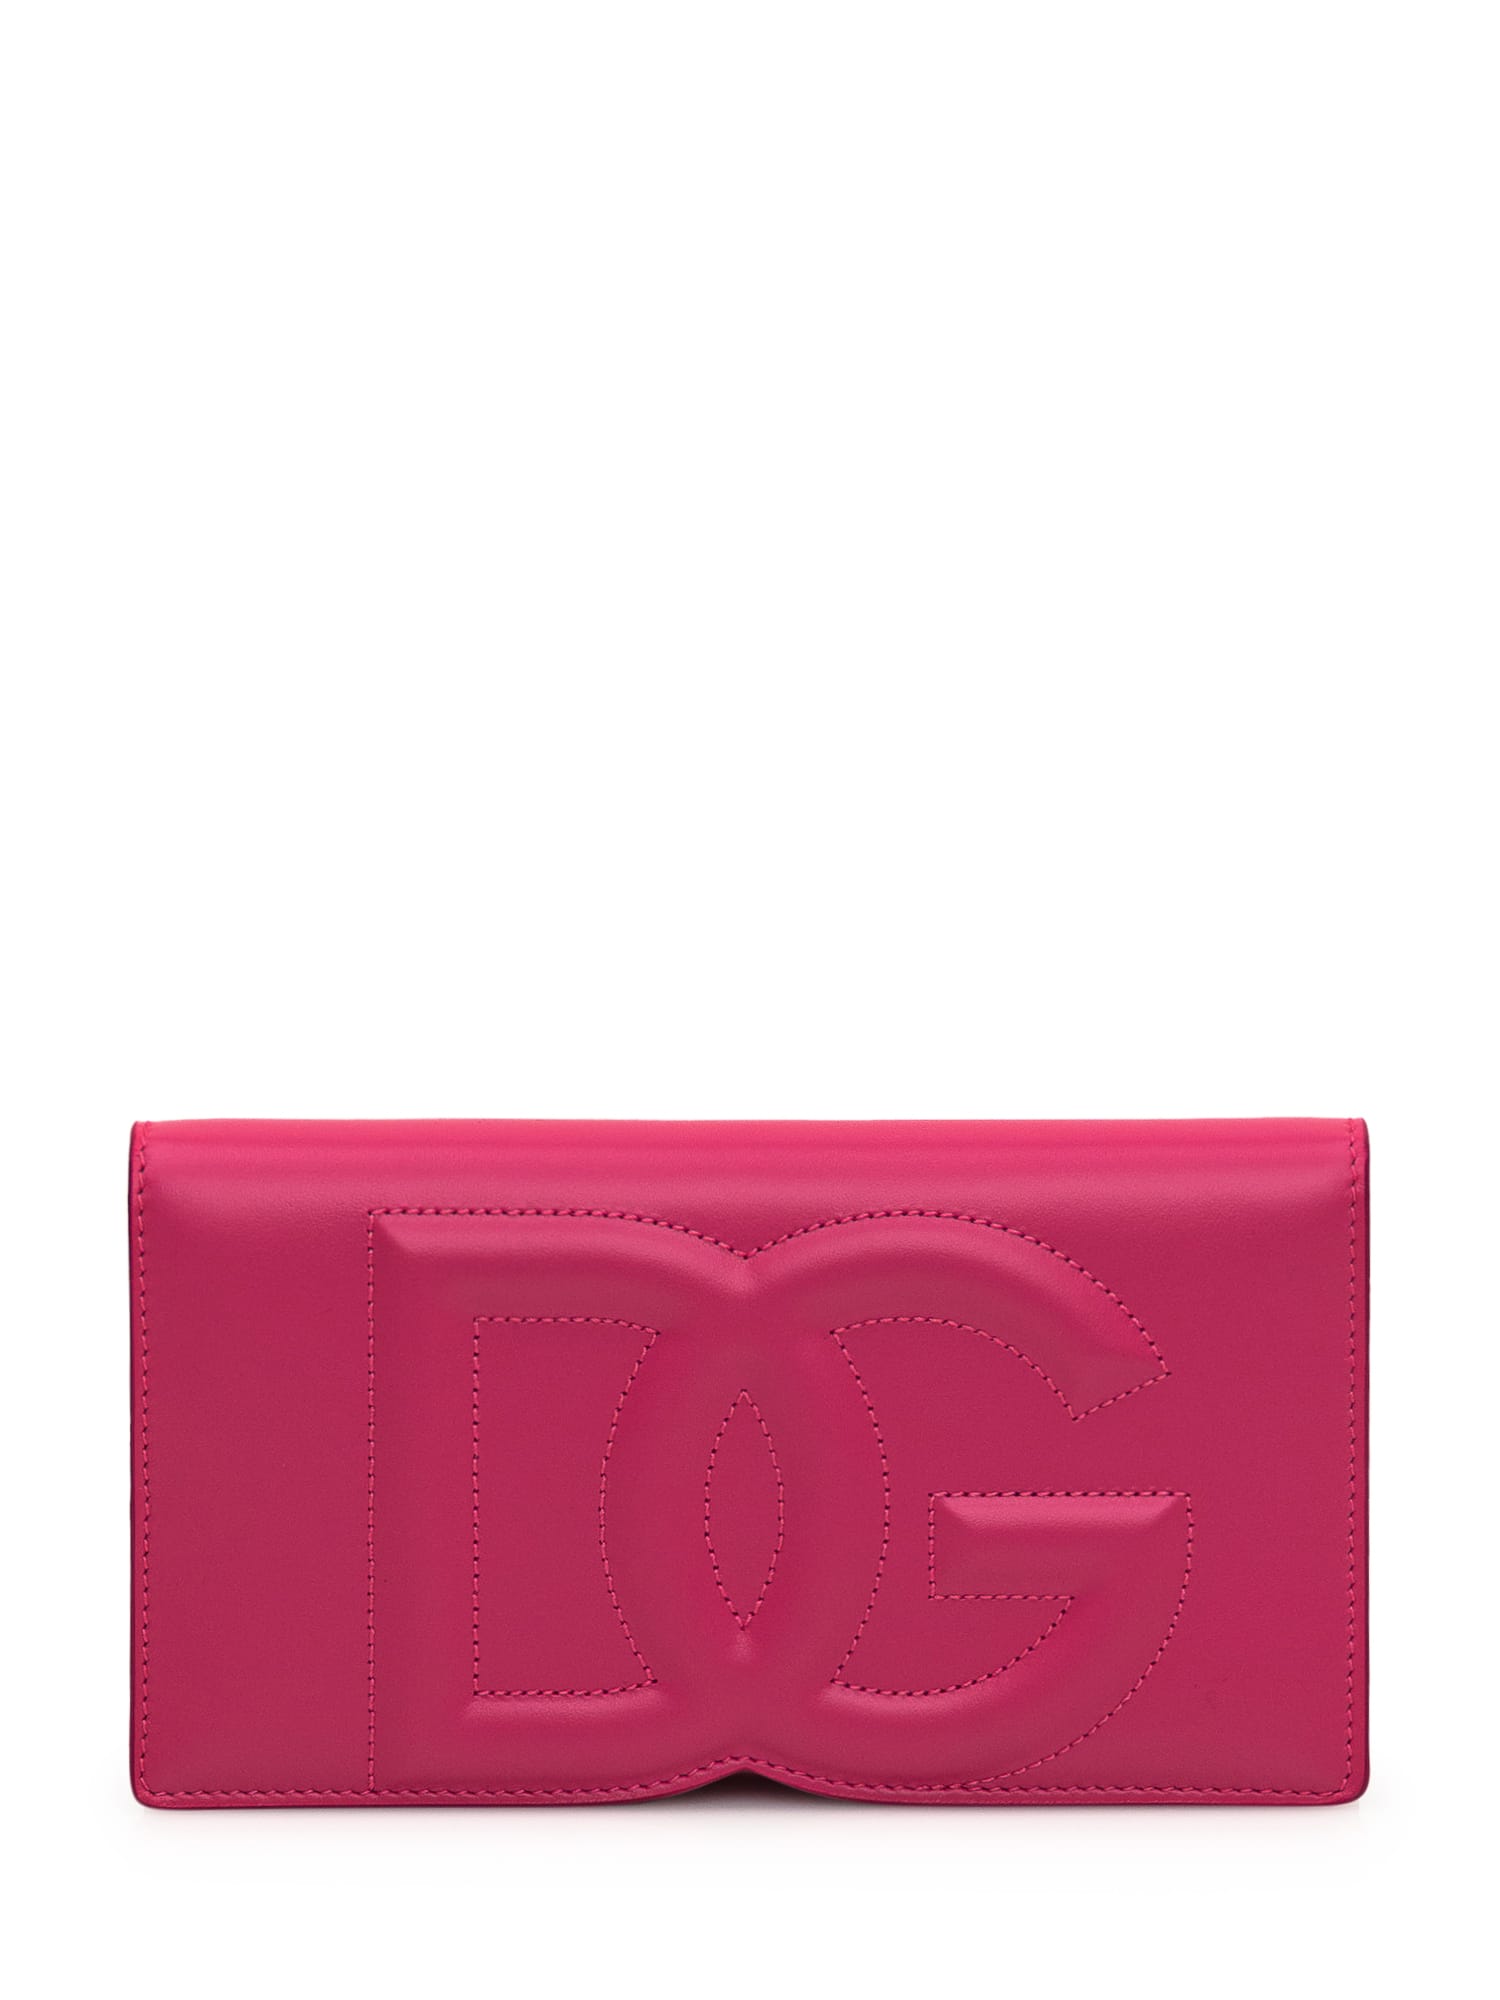 Dolce & Gabbana Phone Bag With Logo In Glicine